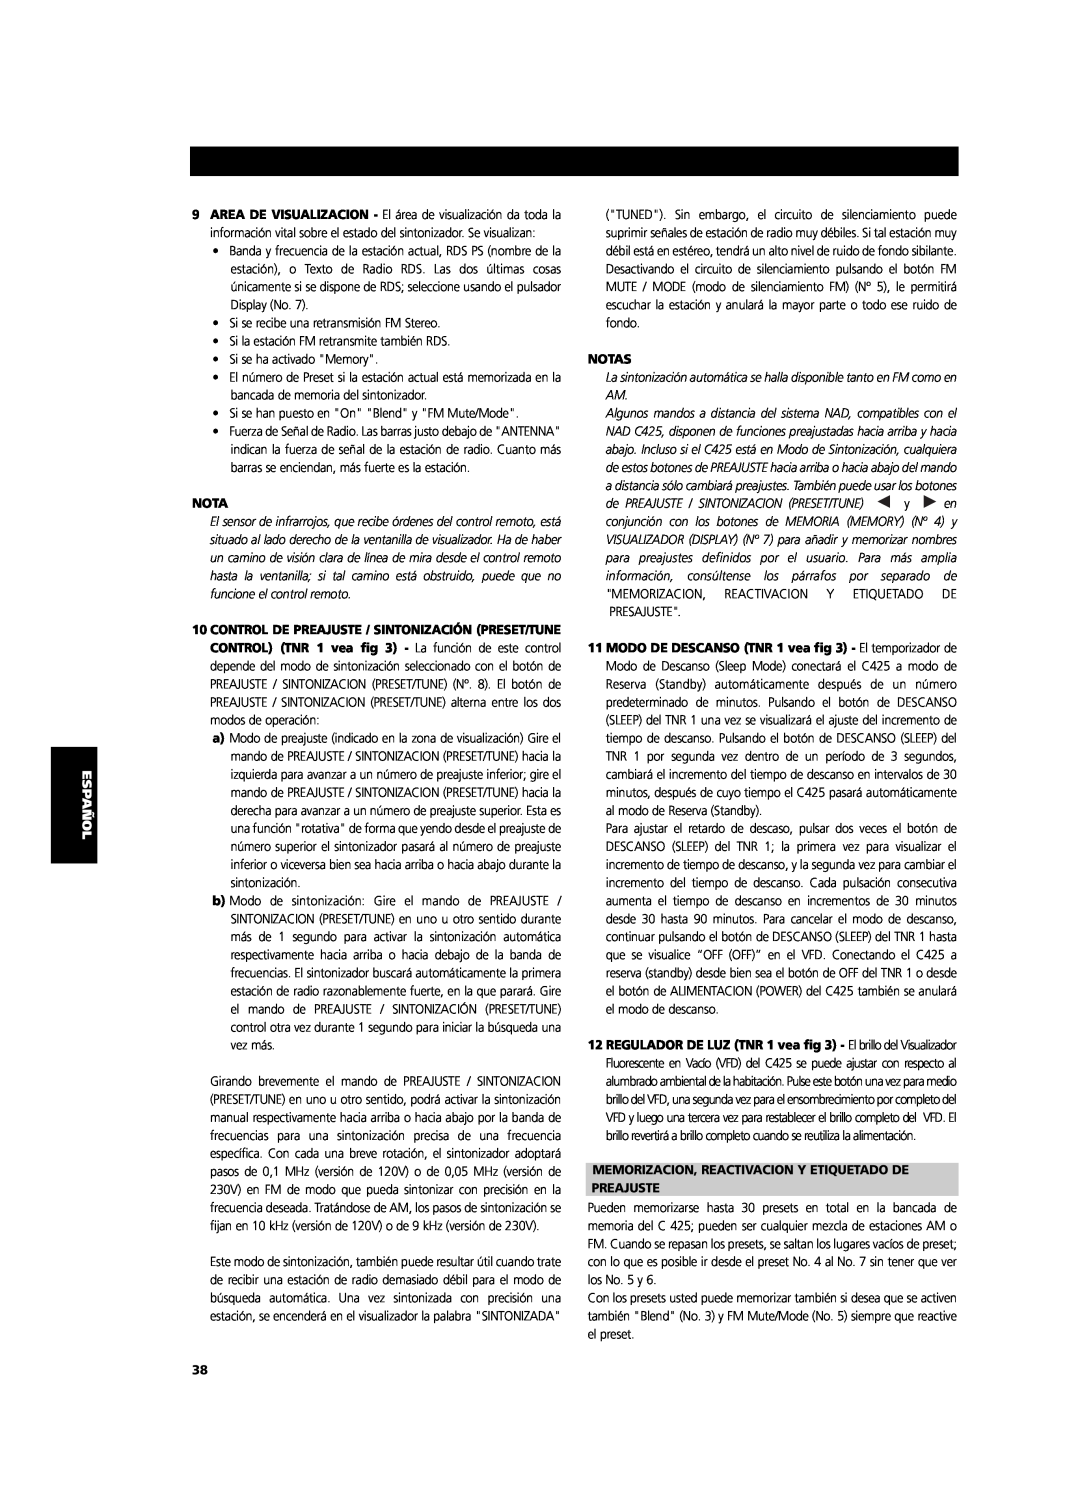 NAD C 425 owner manual Notas, Memorizacion, Reactivacion Y Etiquetado De, Preajuste 